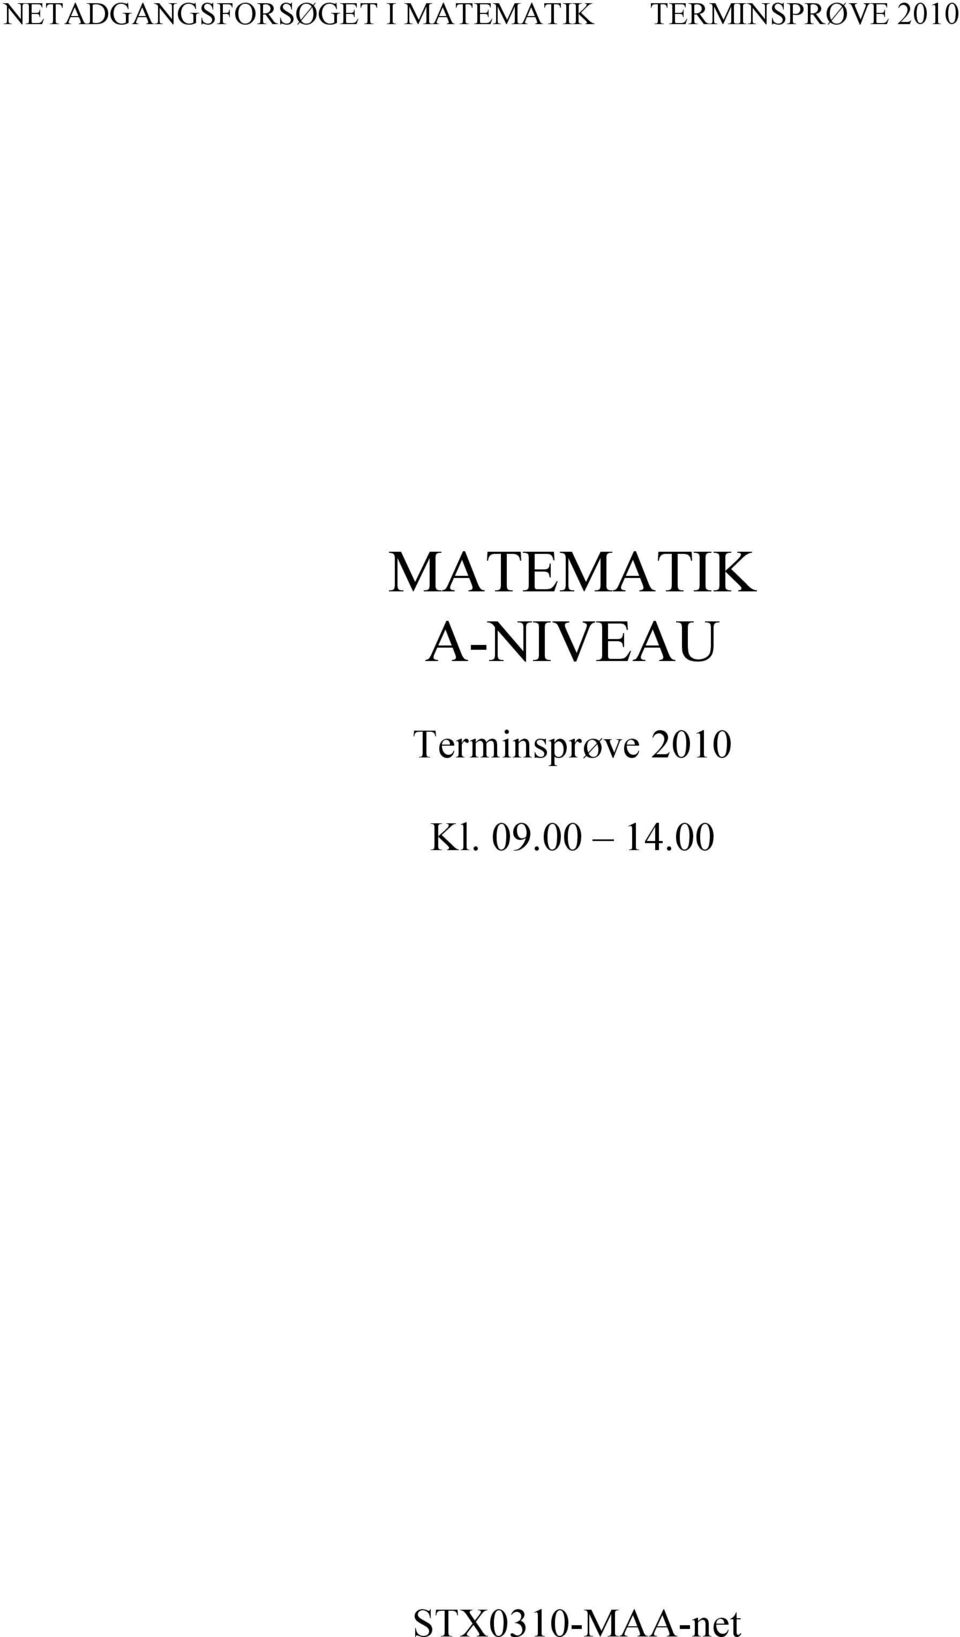 2010 MATEMATIK A-NIVEAU